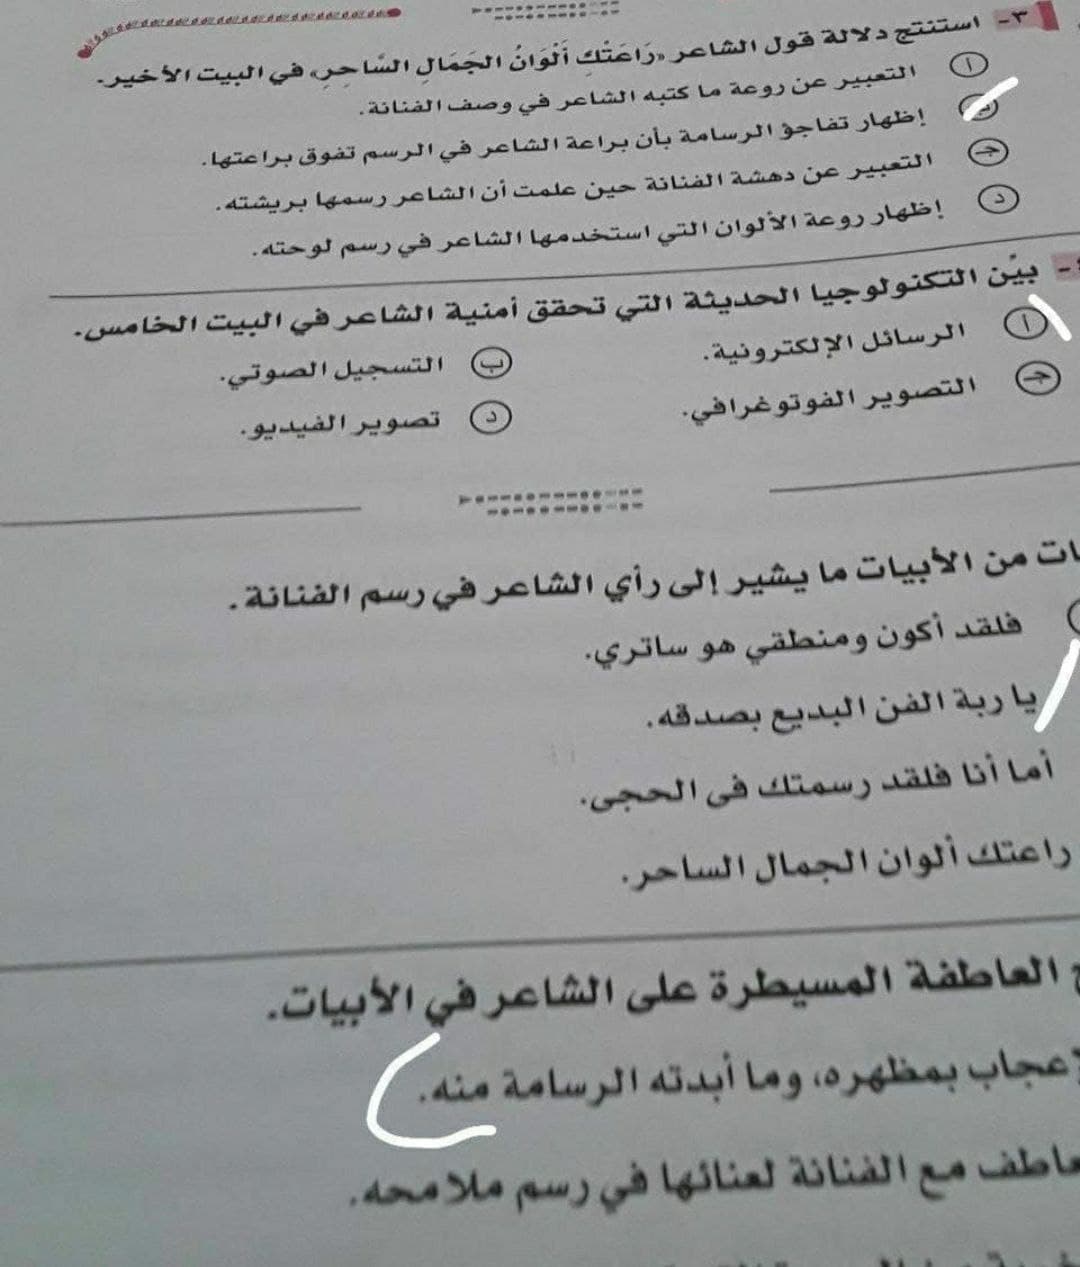 اللغة للثانوية امتحان 2021 العربية العامة الامتحان التجريبي